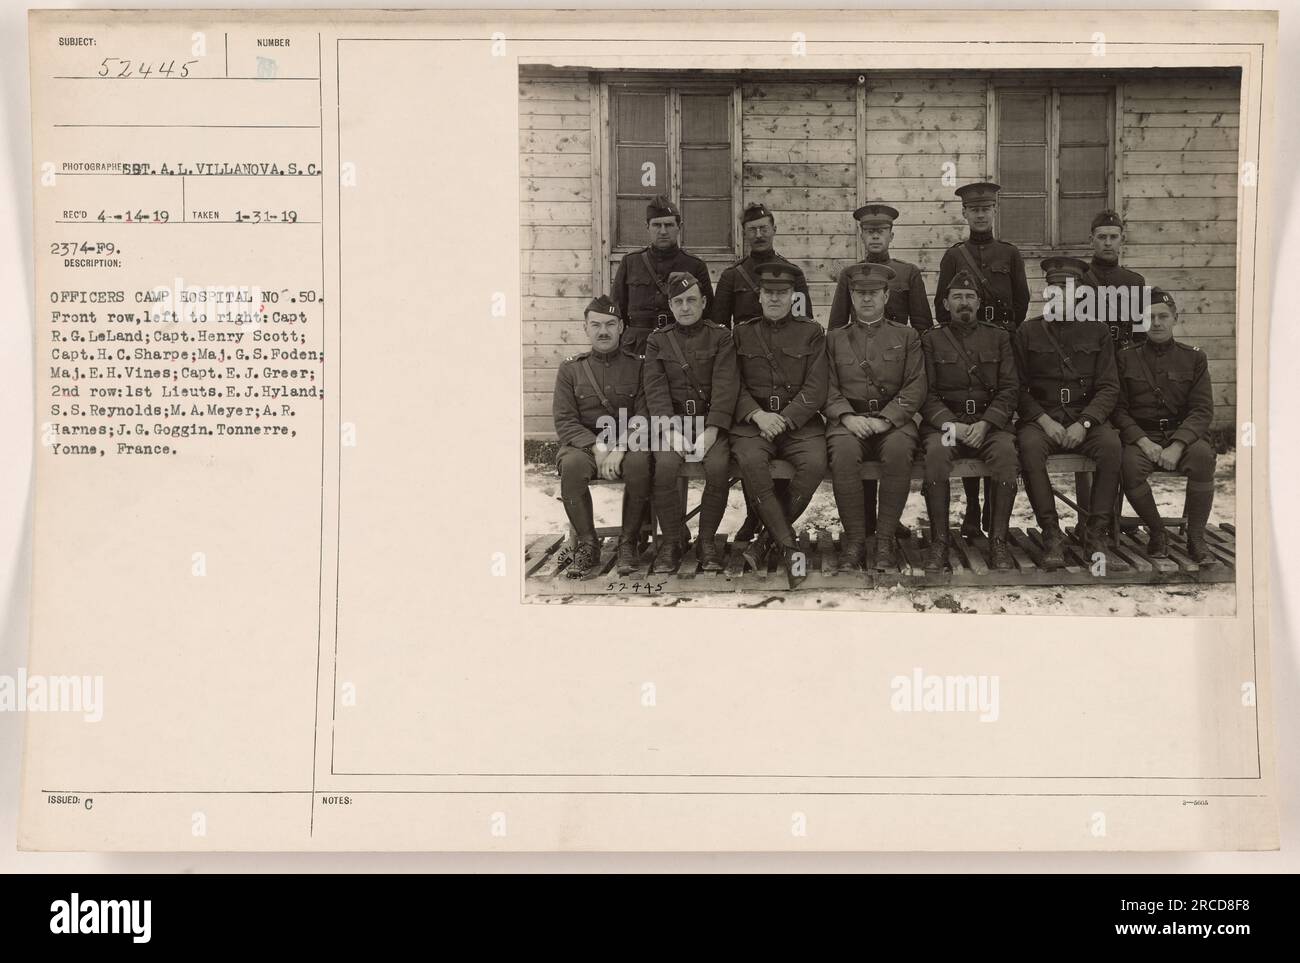 Bild der Offiziere des Lagerkrankenhauses Nr. 50 in Tonnerre, Yonne, Frankreich. In der ersten Reihe von links nach rechts: Kapitän R. G. Leland, Kapitän Henry Scott, Kapitän H. C. Sharpe, Major G. S. Foden, Major E.H. Vines, Kapitän E. J. Greer. In der zweiten Reihe: 1. Lieuts. E.J. HYLAND, S. S. S. Reynolds, M. A. Meyer, A. R. Harnes, J. G. Goggin. Foto aufgenommen am 31. Januar 1919. Stockfoto